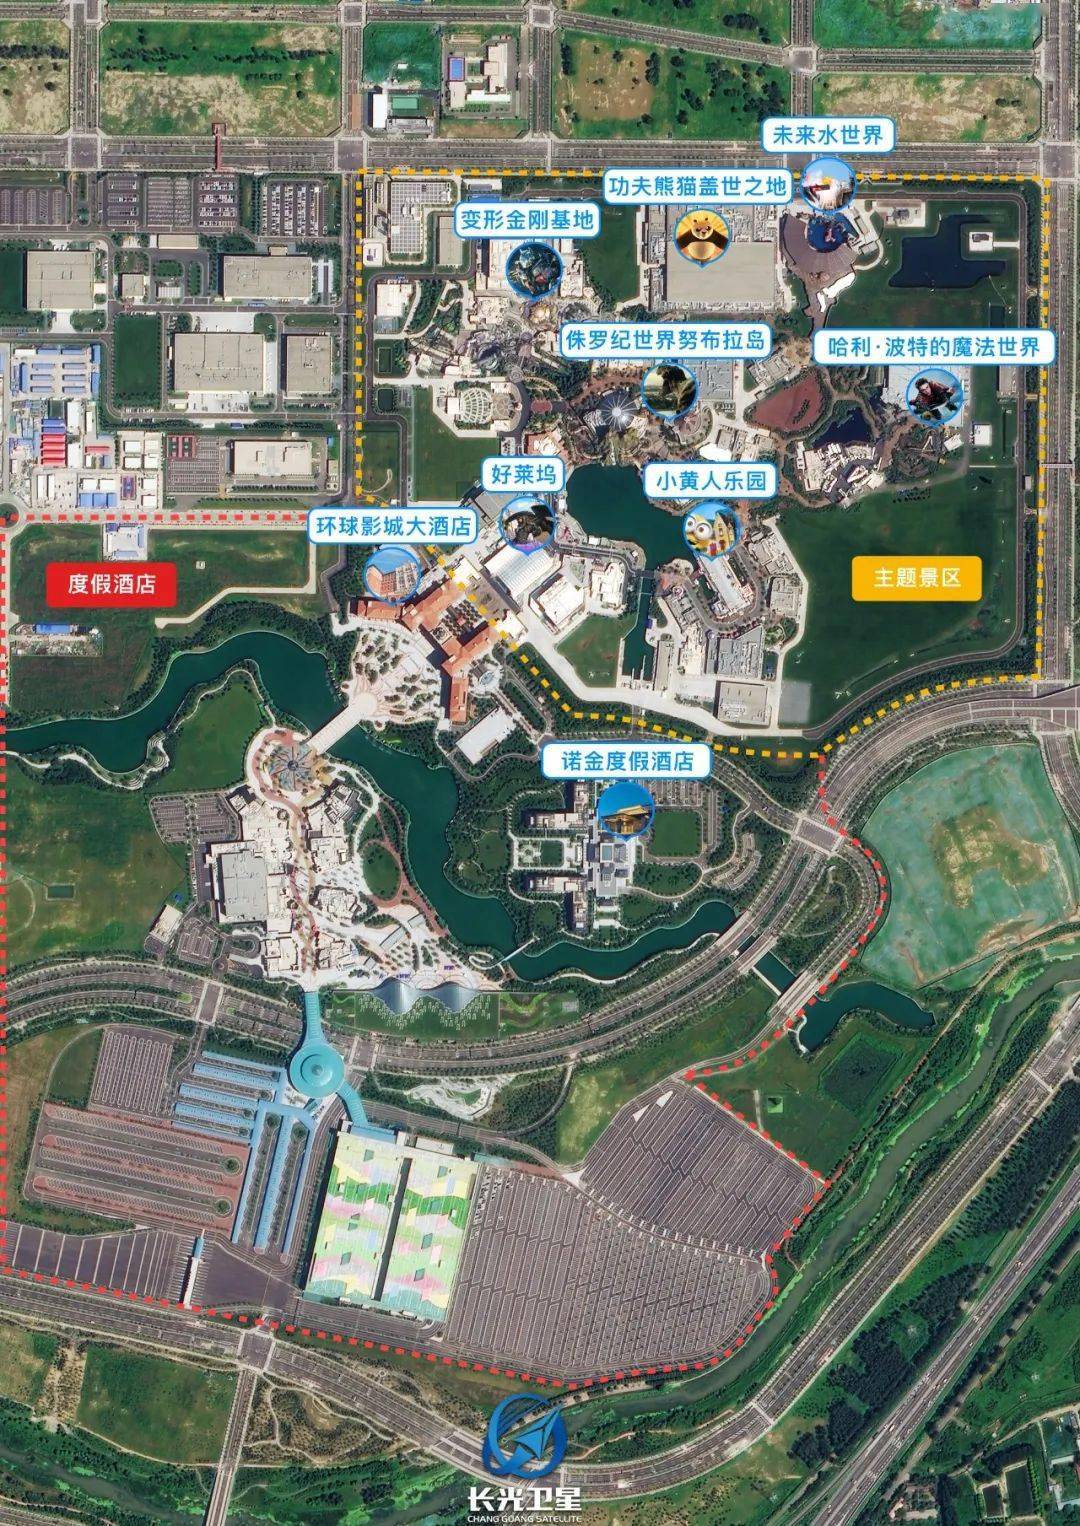 卫星目击丨北京环球影城9月20日正式开园